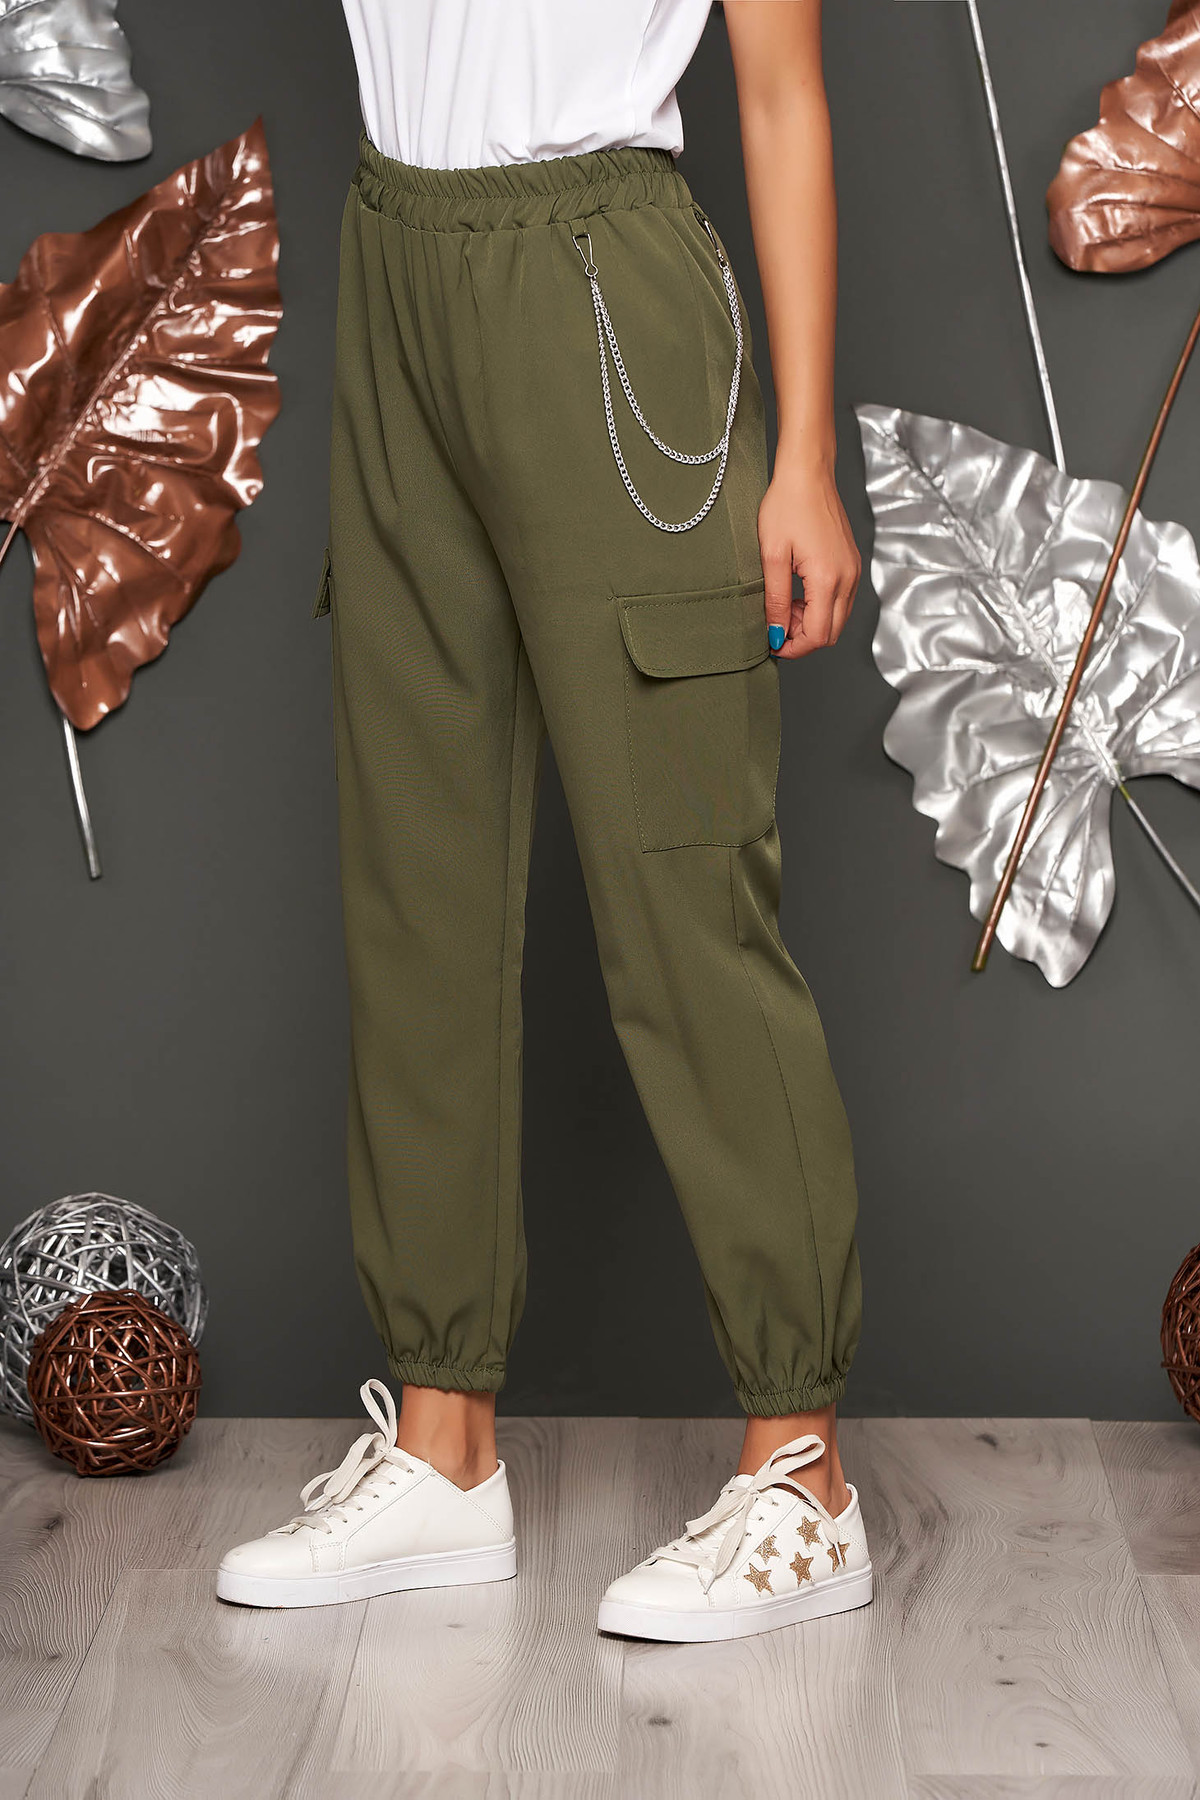 Pantaloni SunShine khaki casual 3/4 cu talie inalta buzunare laterale cu accesoriu inclus